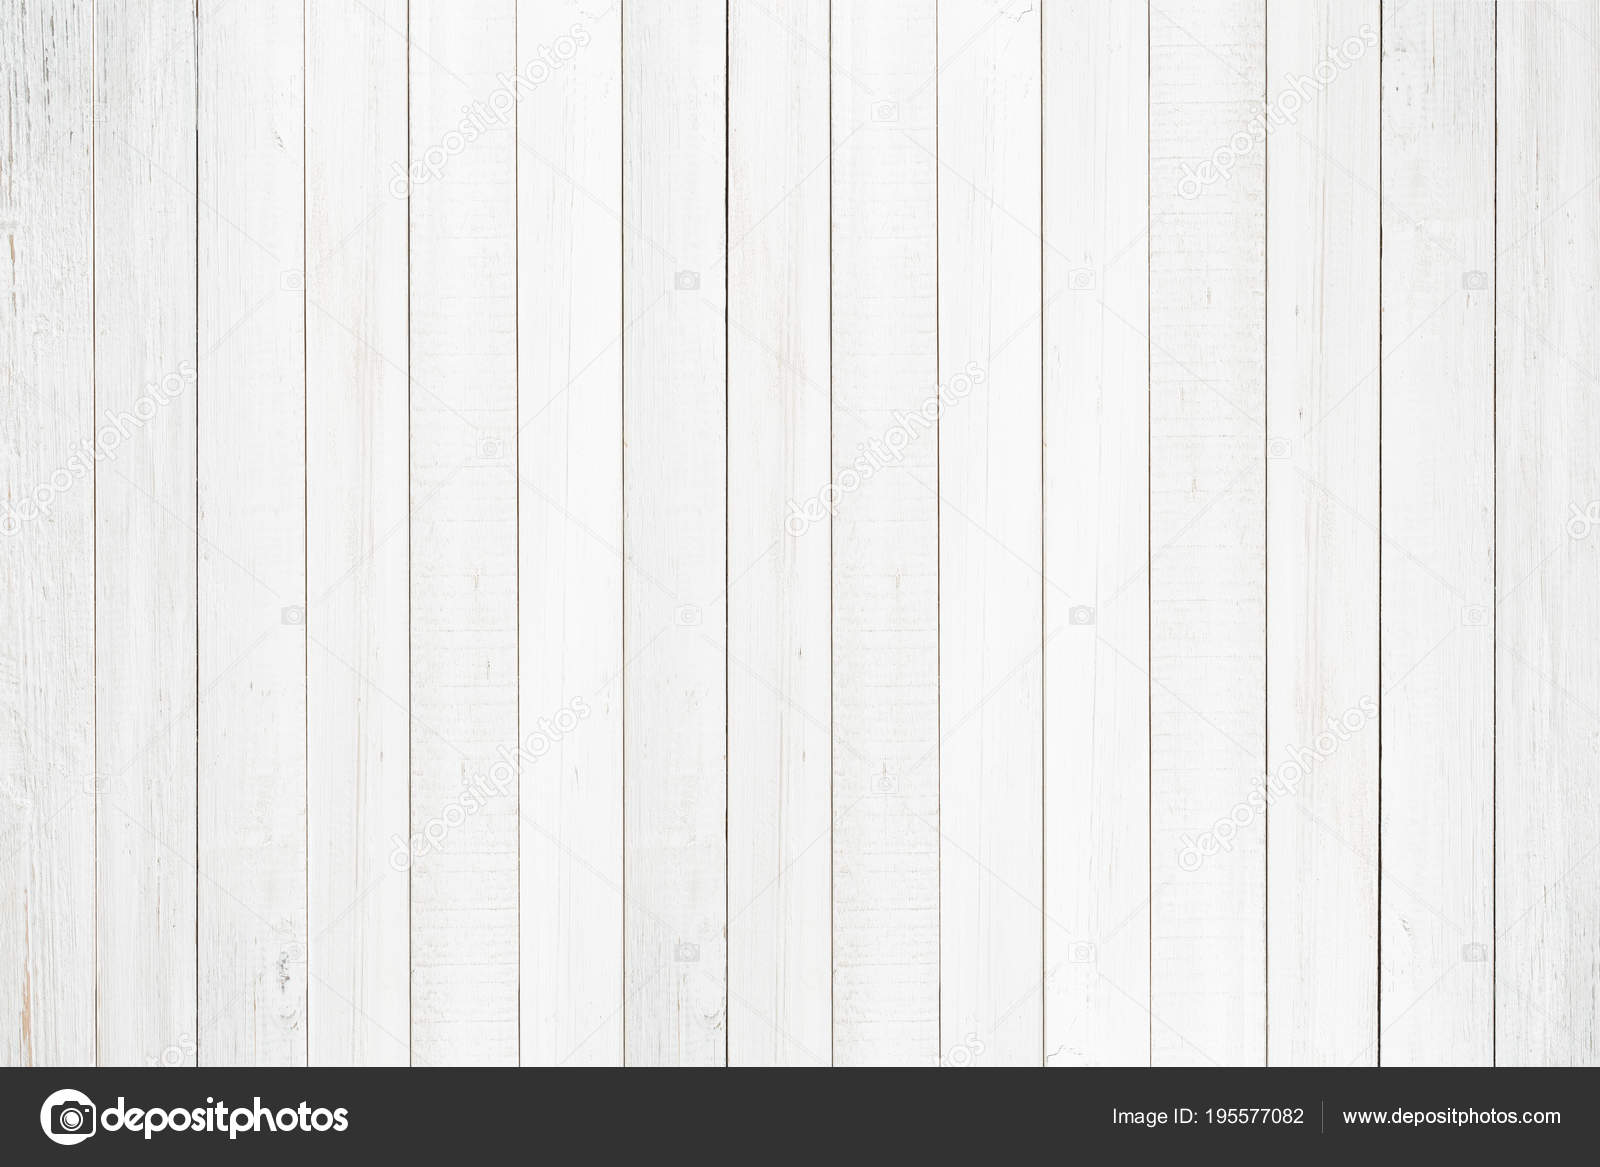 Tường gỗ màu trắng tự nhiên là một sự lựa chọn lý tưởng cho các không gian nội thất hiện đại, tạo ra không gian tươi sáng và đầy phong cách. Hình ảnh về tường gỗ trắng tự nhiên sẽ giúp bạn đưa ra quyết định đúng đắn cho căn phòng của mình.